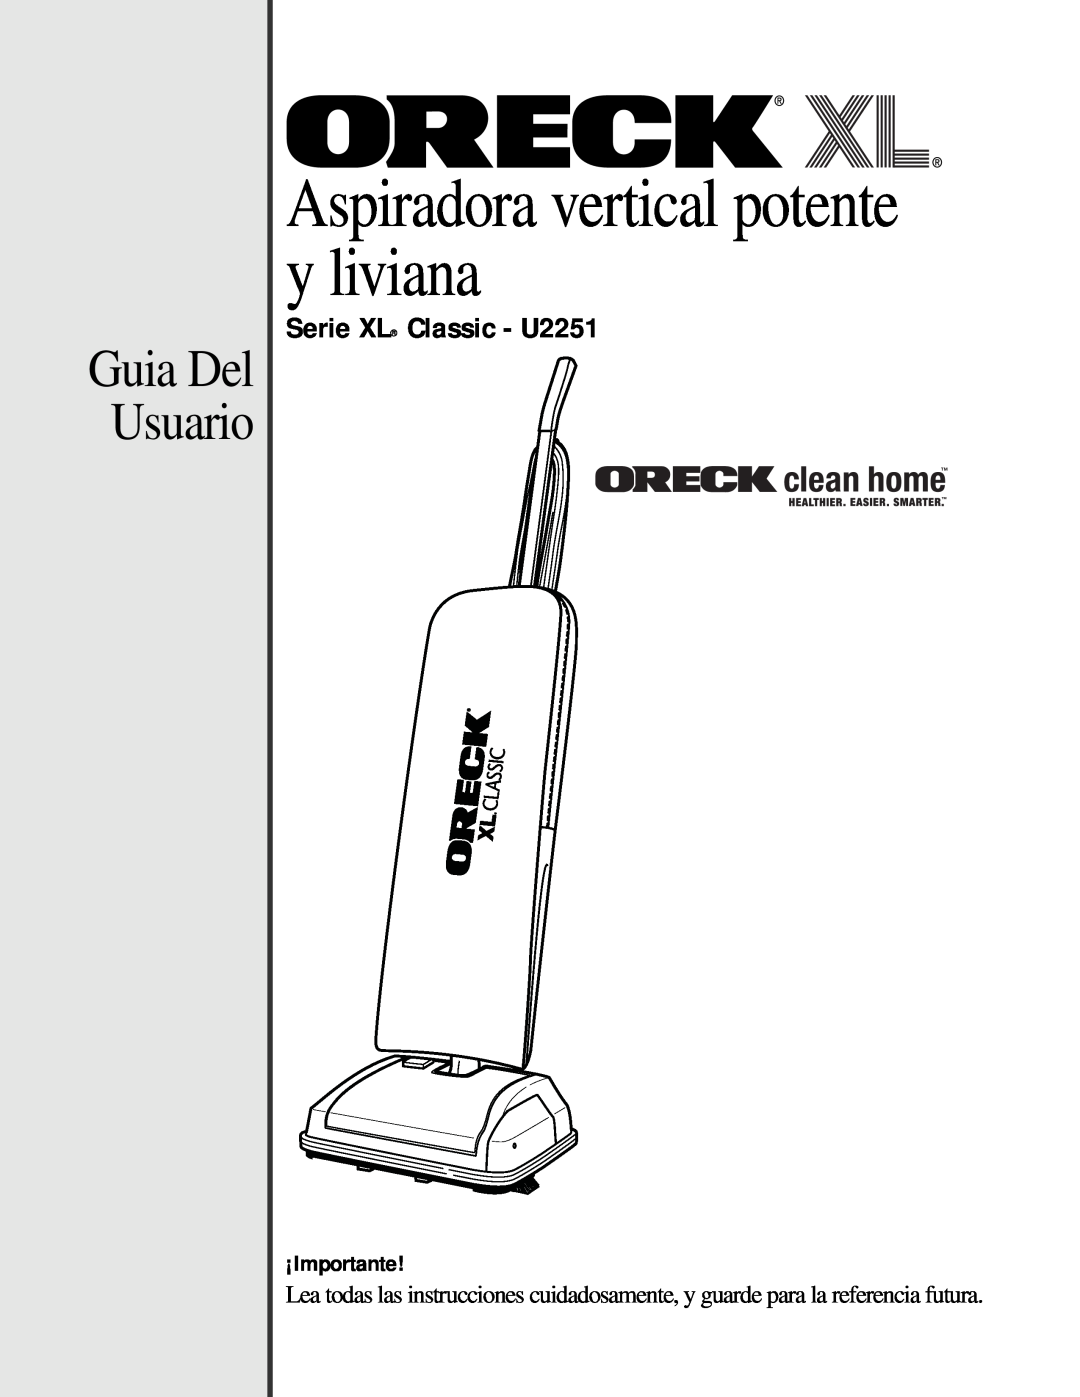 Oreck manual Guia Del Usuario, Serie XL Classic - U2251, Aspiradora vertical potente y liviana, ¡Importante 